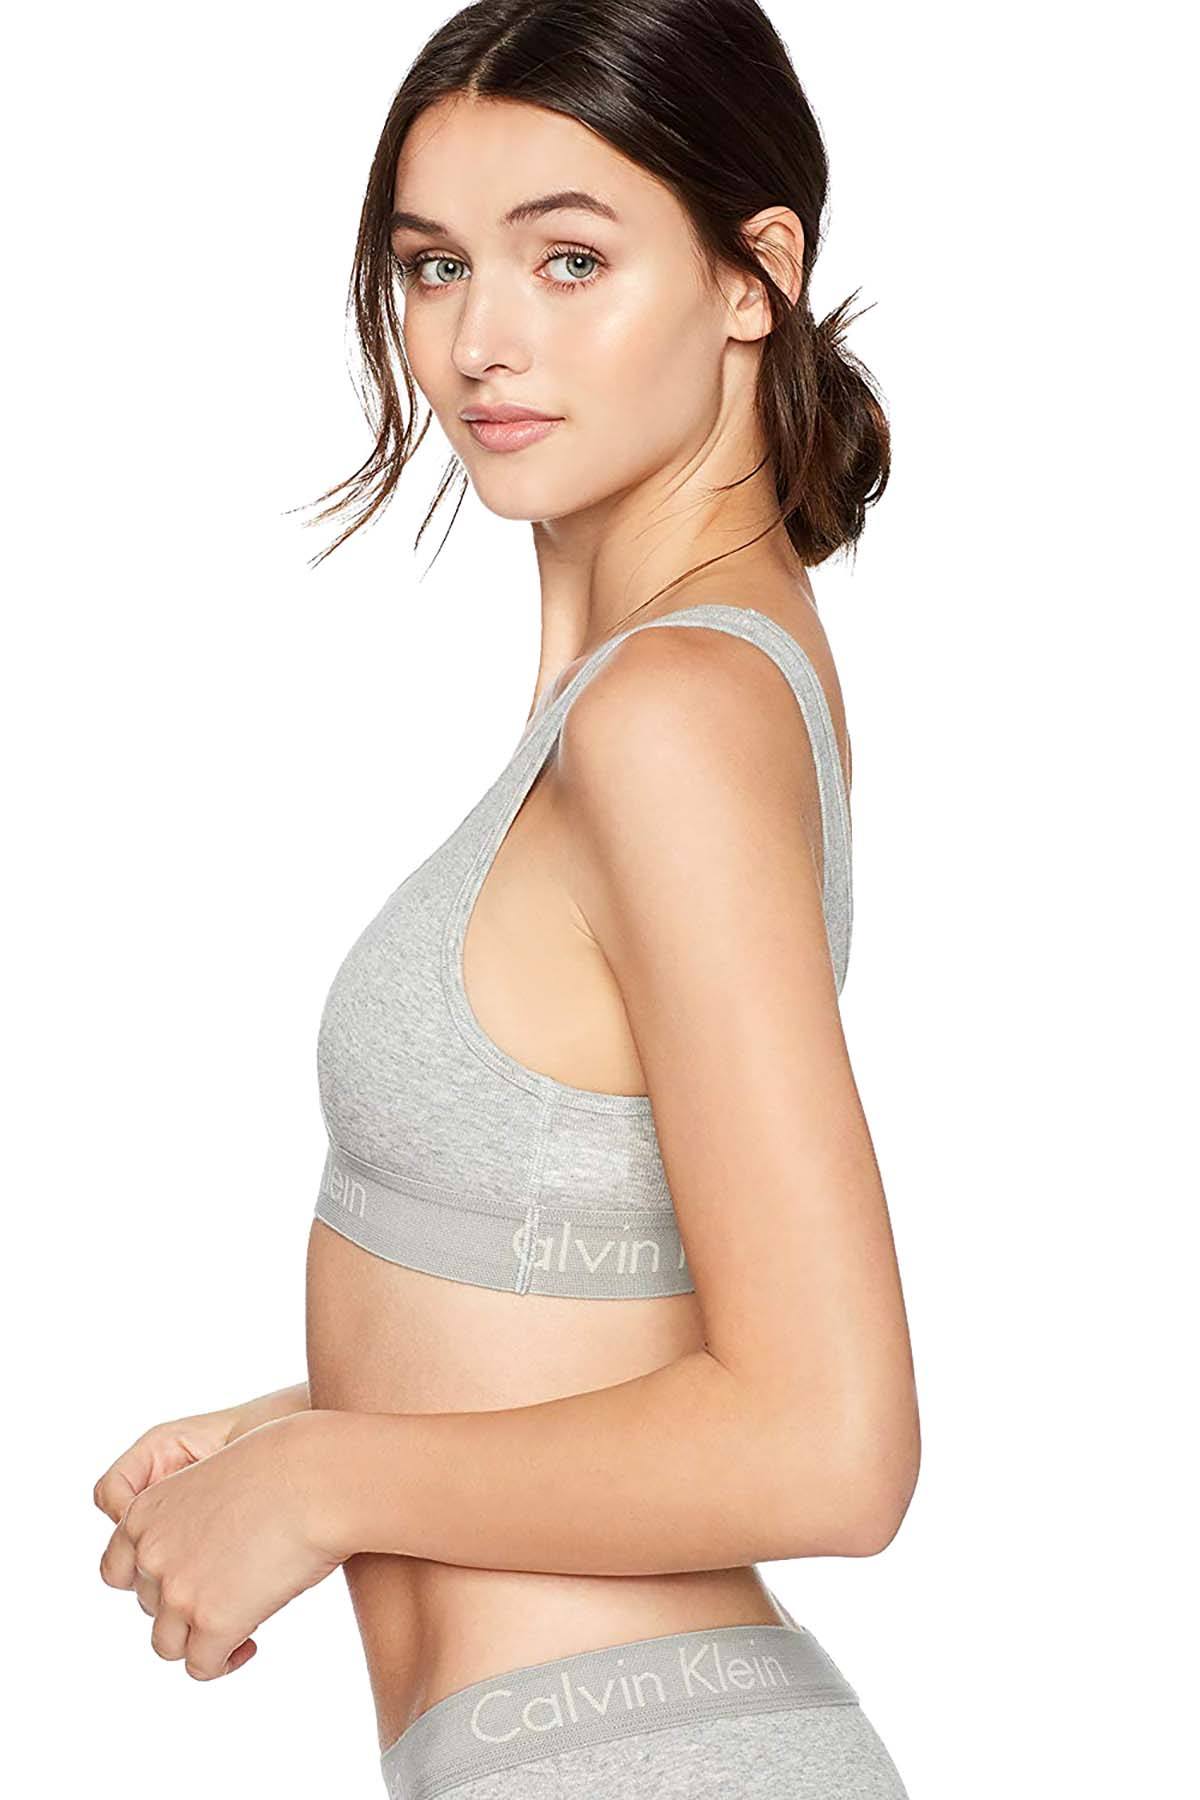 Calvin Klein Women's Body Unlined Bralette, Grey Heather, S